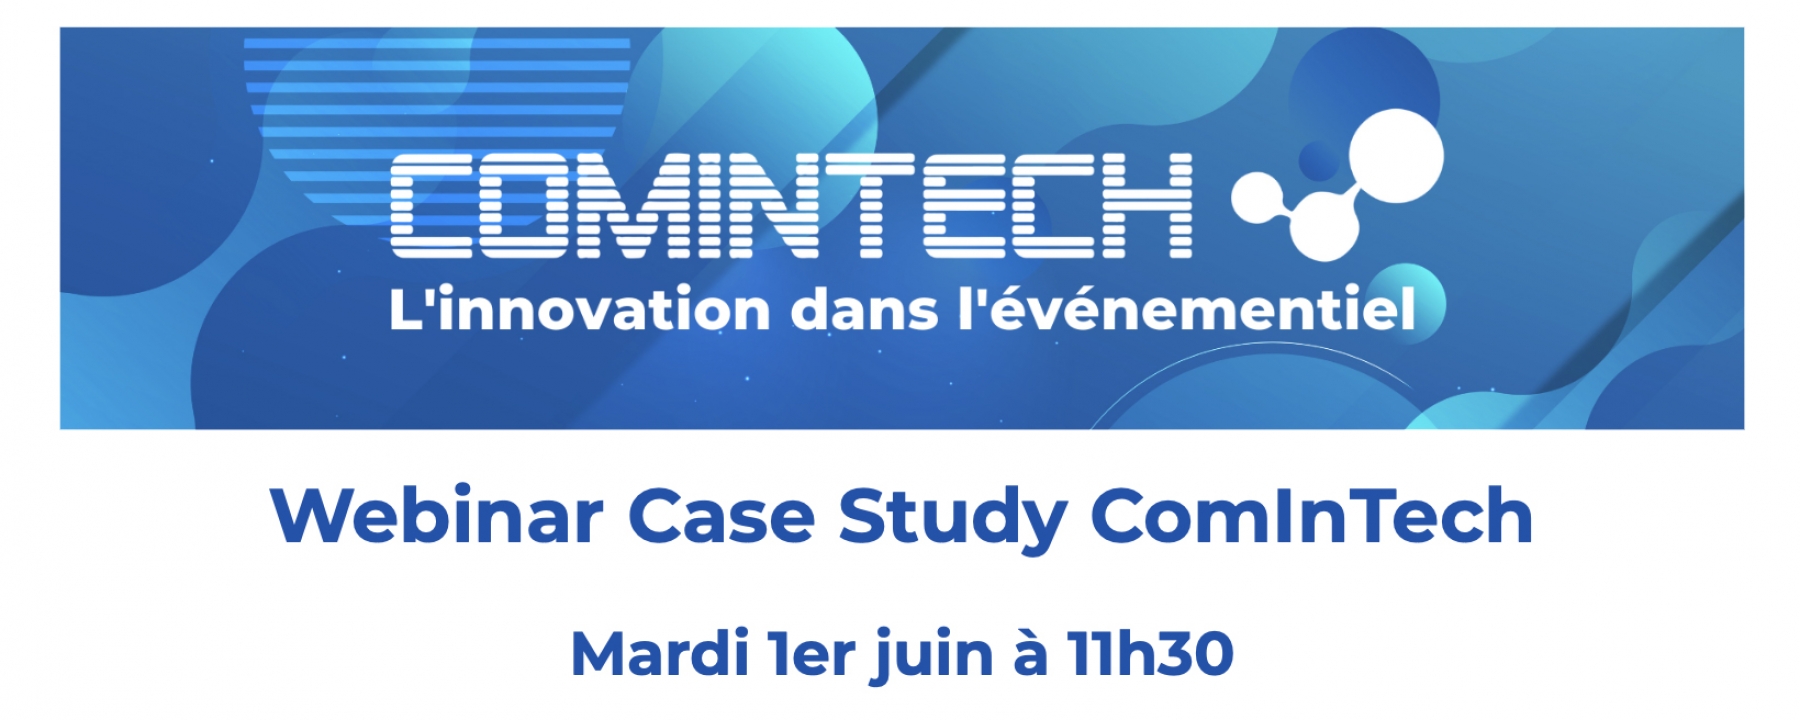 Case Study ComInTech, organisé par MPI France Suisse le 1er juin 2021